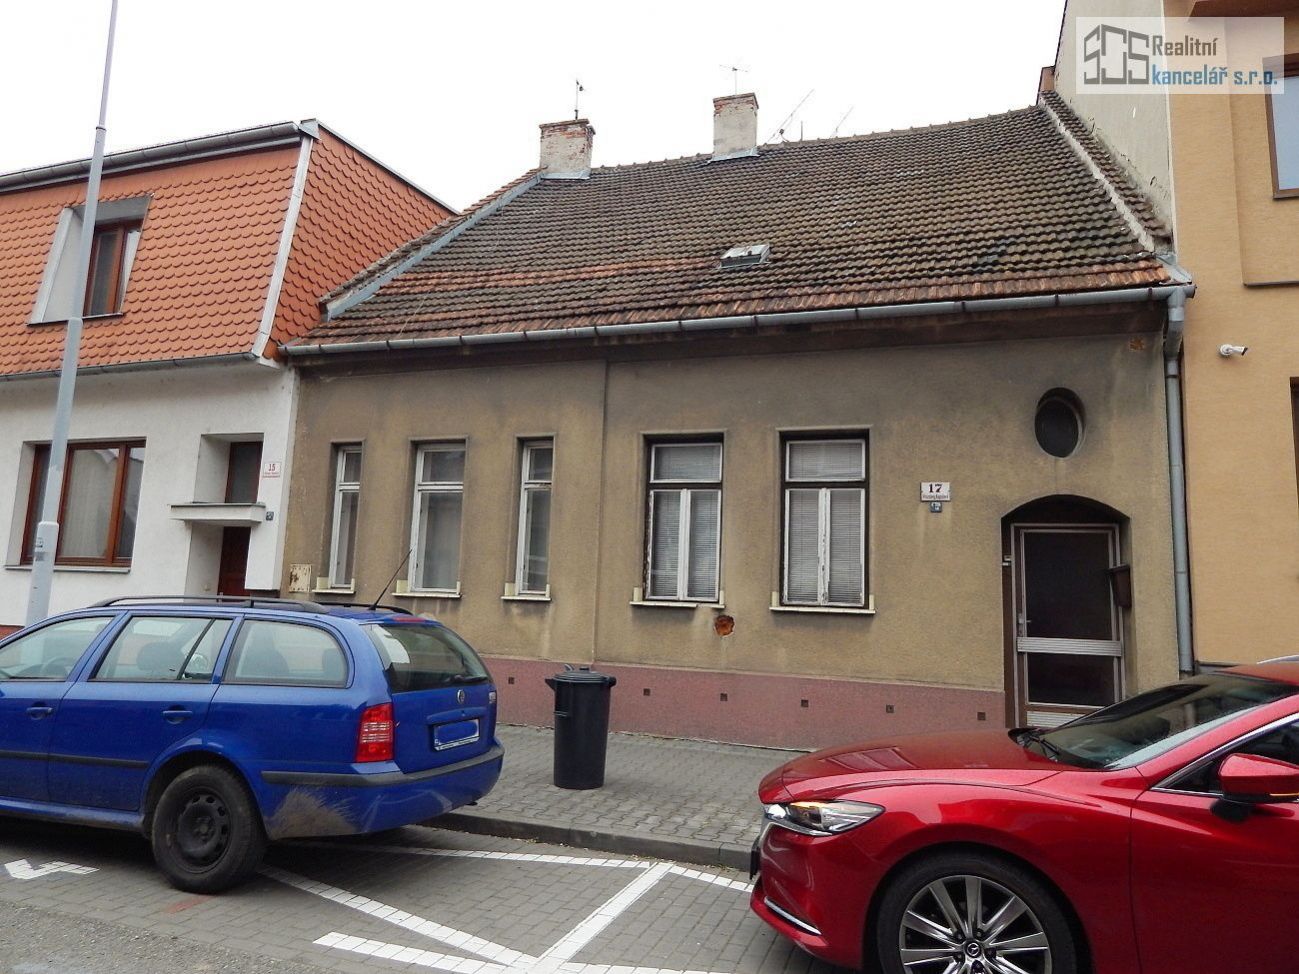 RD 2x 2+1 Brno, Černovice  dům se zahradou v klidné ulici  k rekonstrukci. Možnost rozšíření.